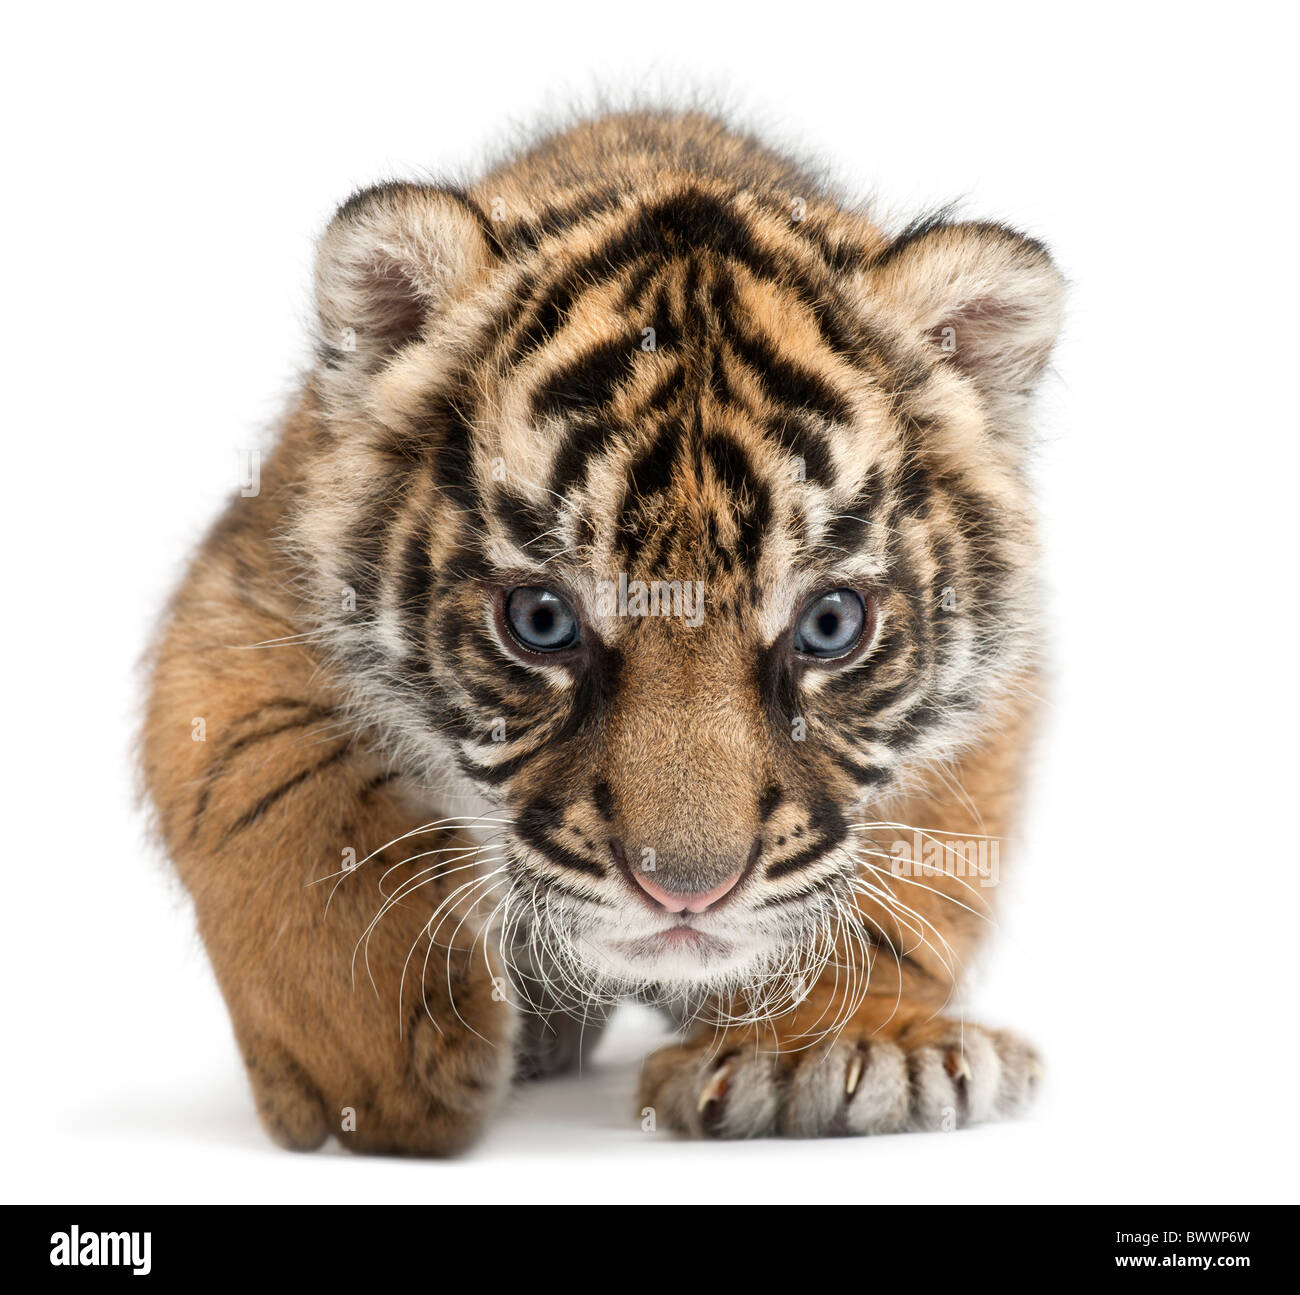 Cachorro de Tigre de Sumatra, Panthera tigris sumatrae, 3 semanas de edad, delante de un fondo blanco Foto de stock